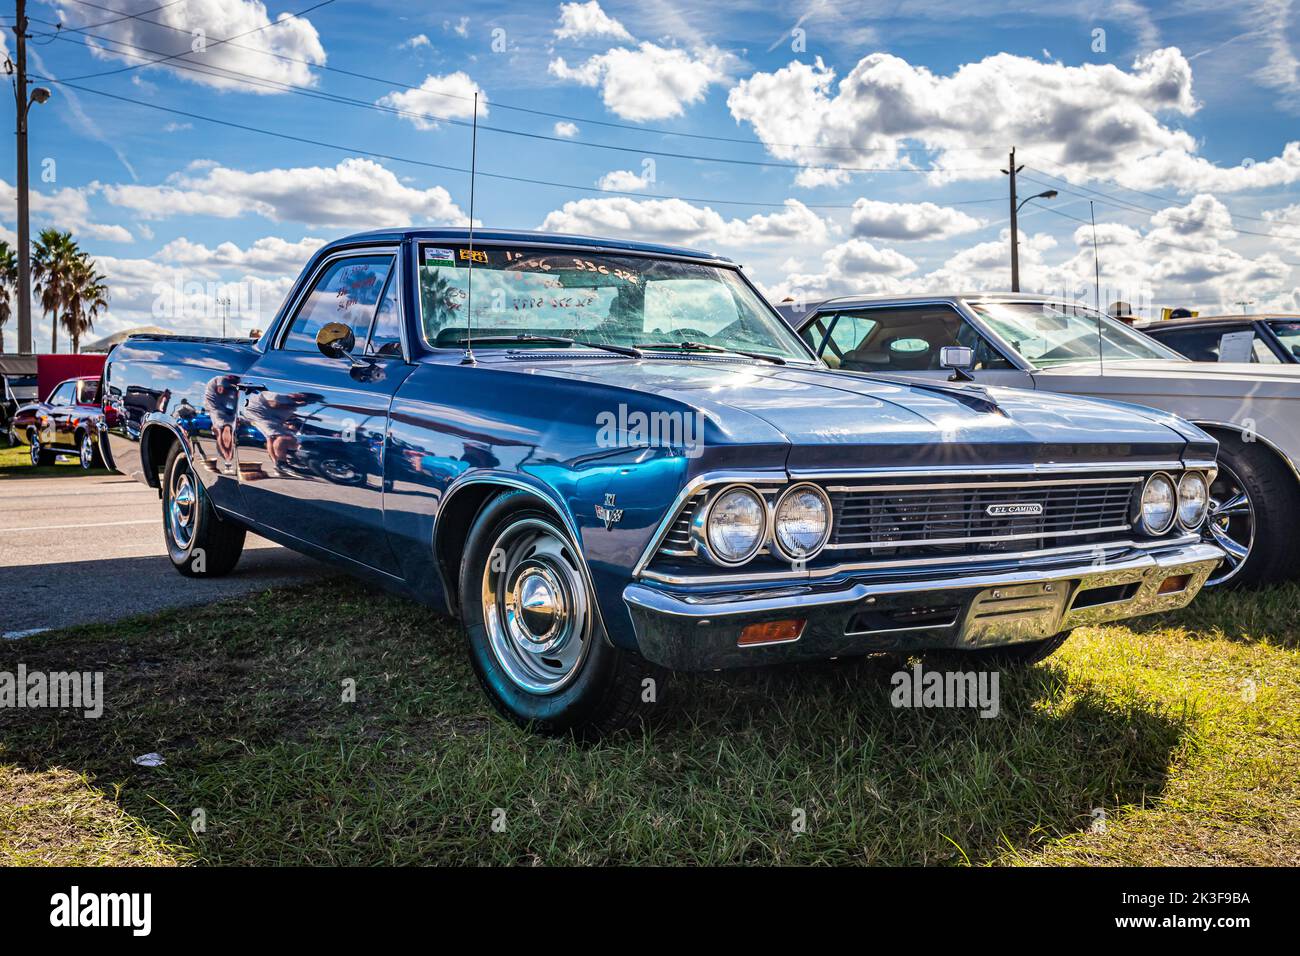 Chevrolet el camino immagini e fotografie stock ad alta risoluzione - Alamy